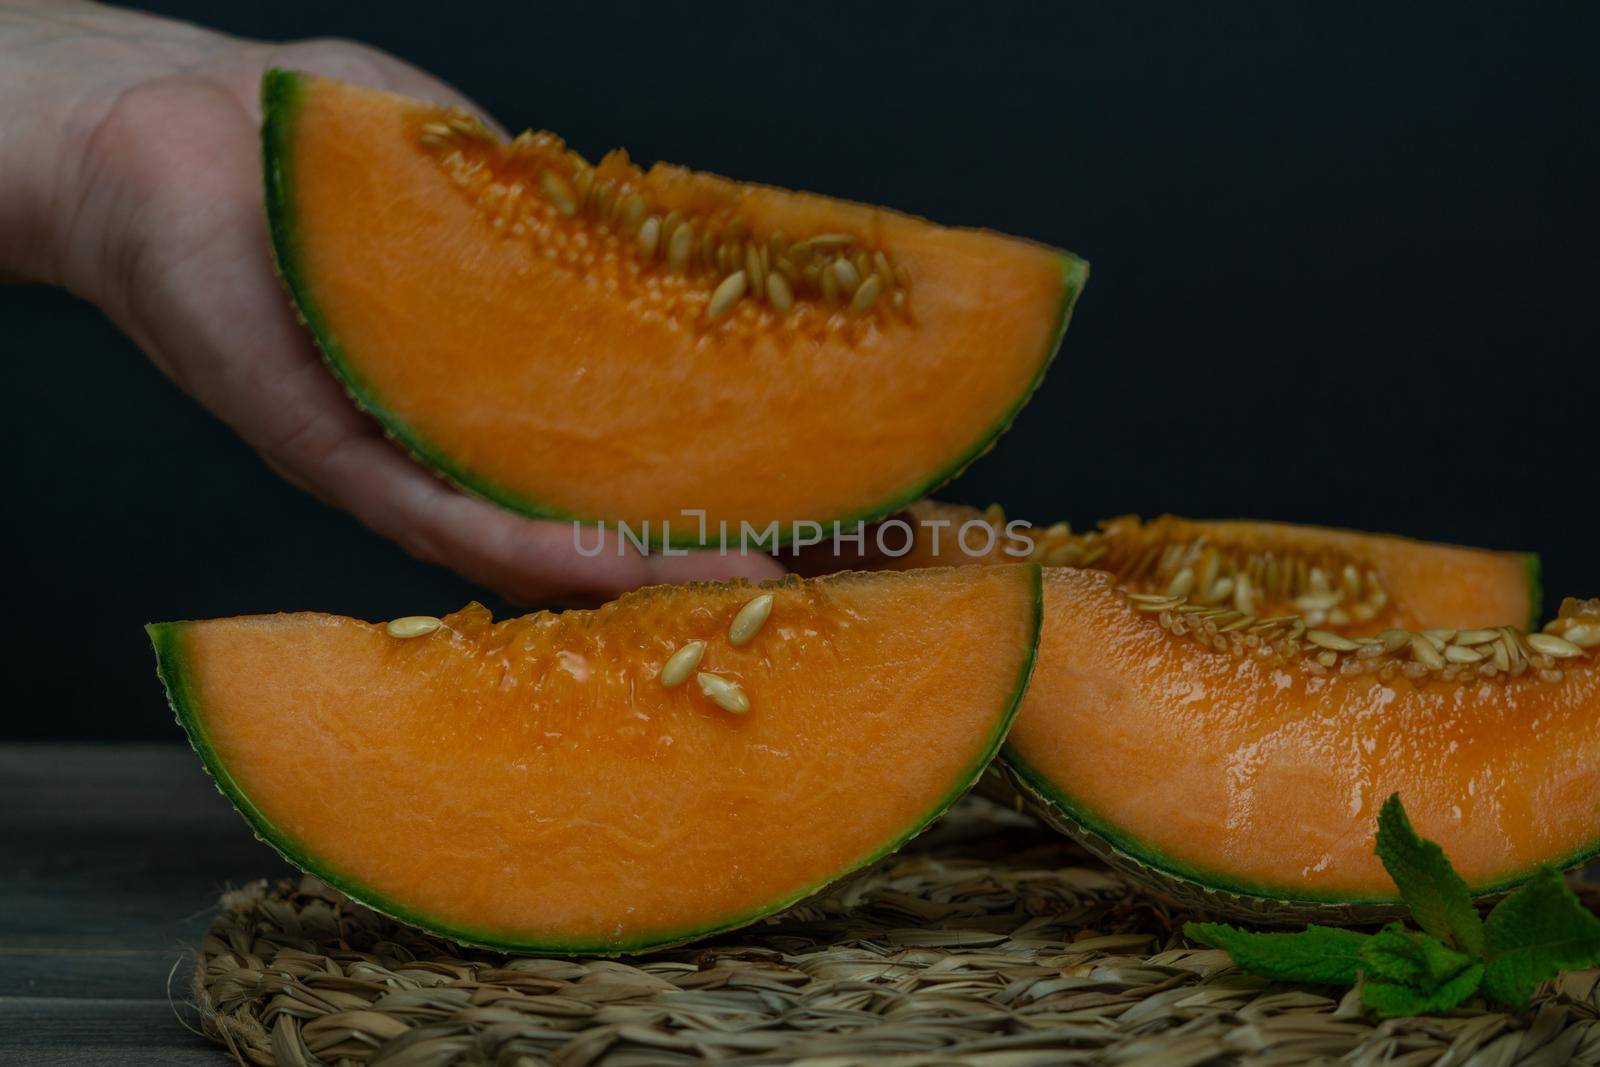 cantaloupe melon by joseantona